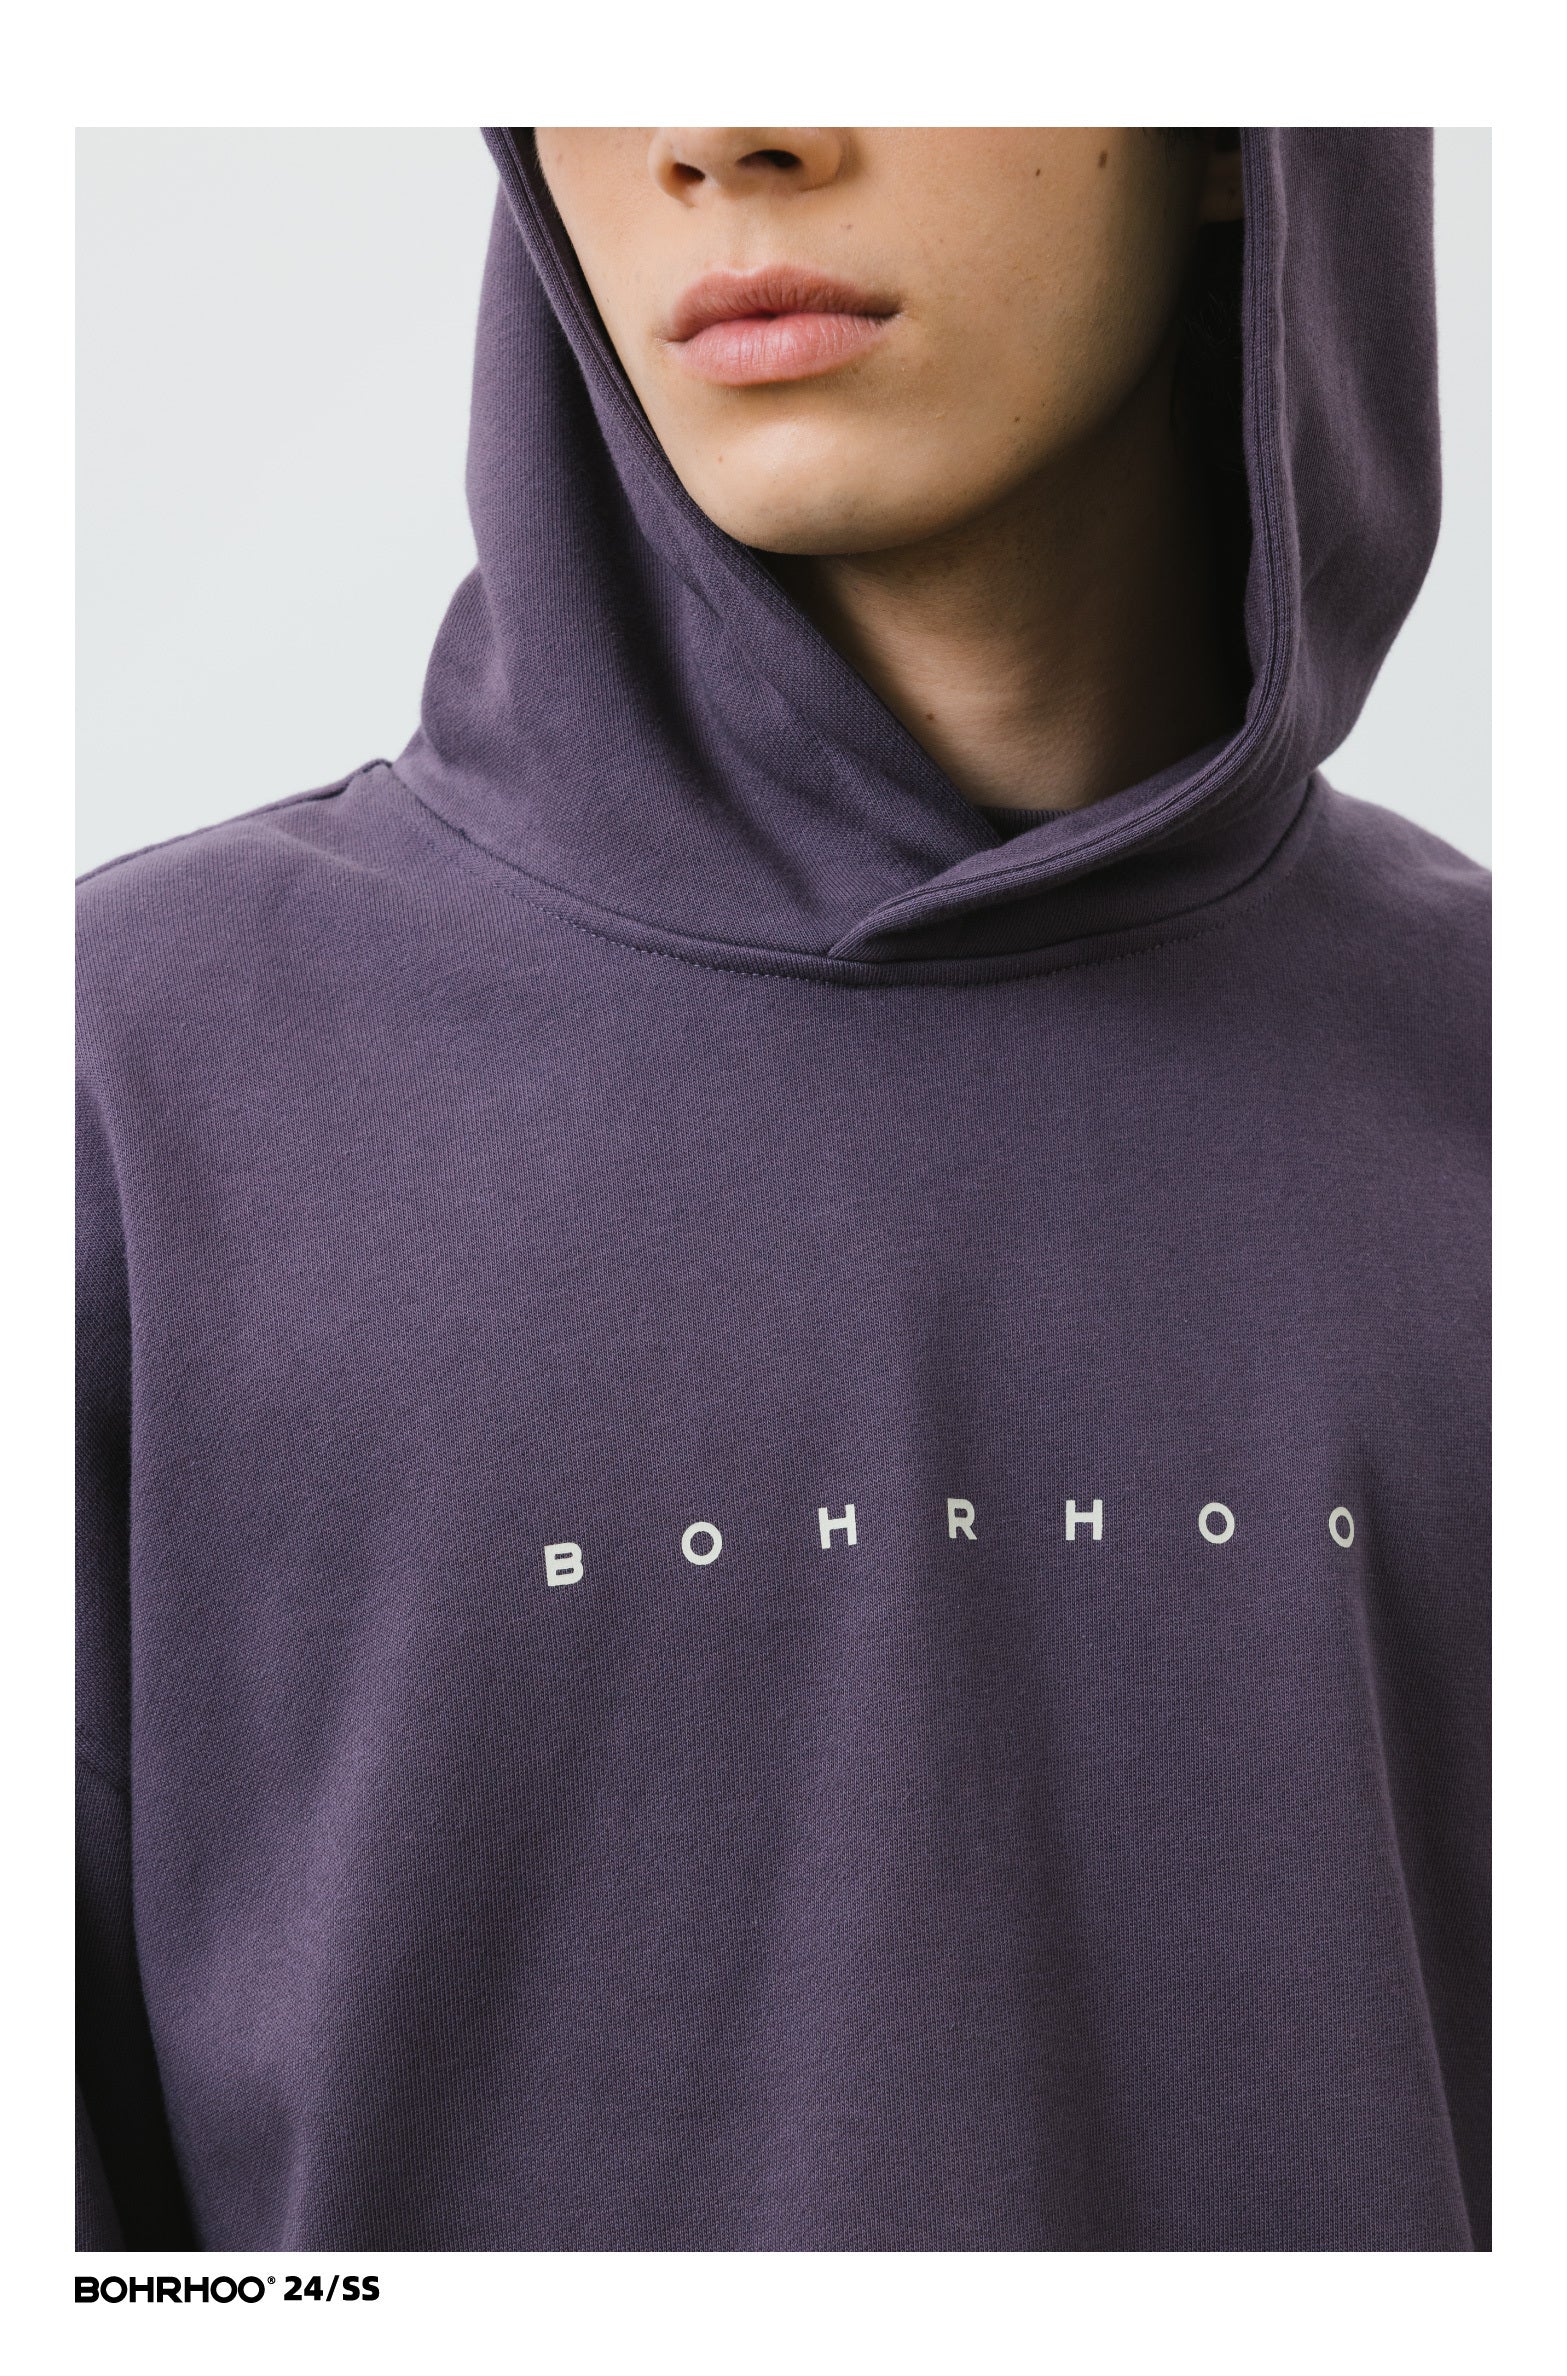 BOHRHOO シンプルなプリントフーデッドスウェットシャツ BHH020